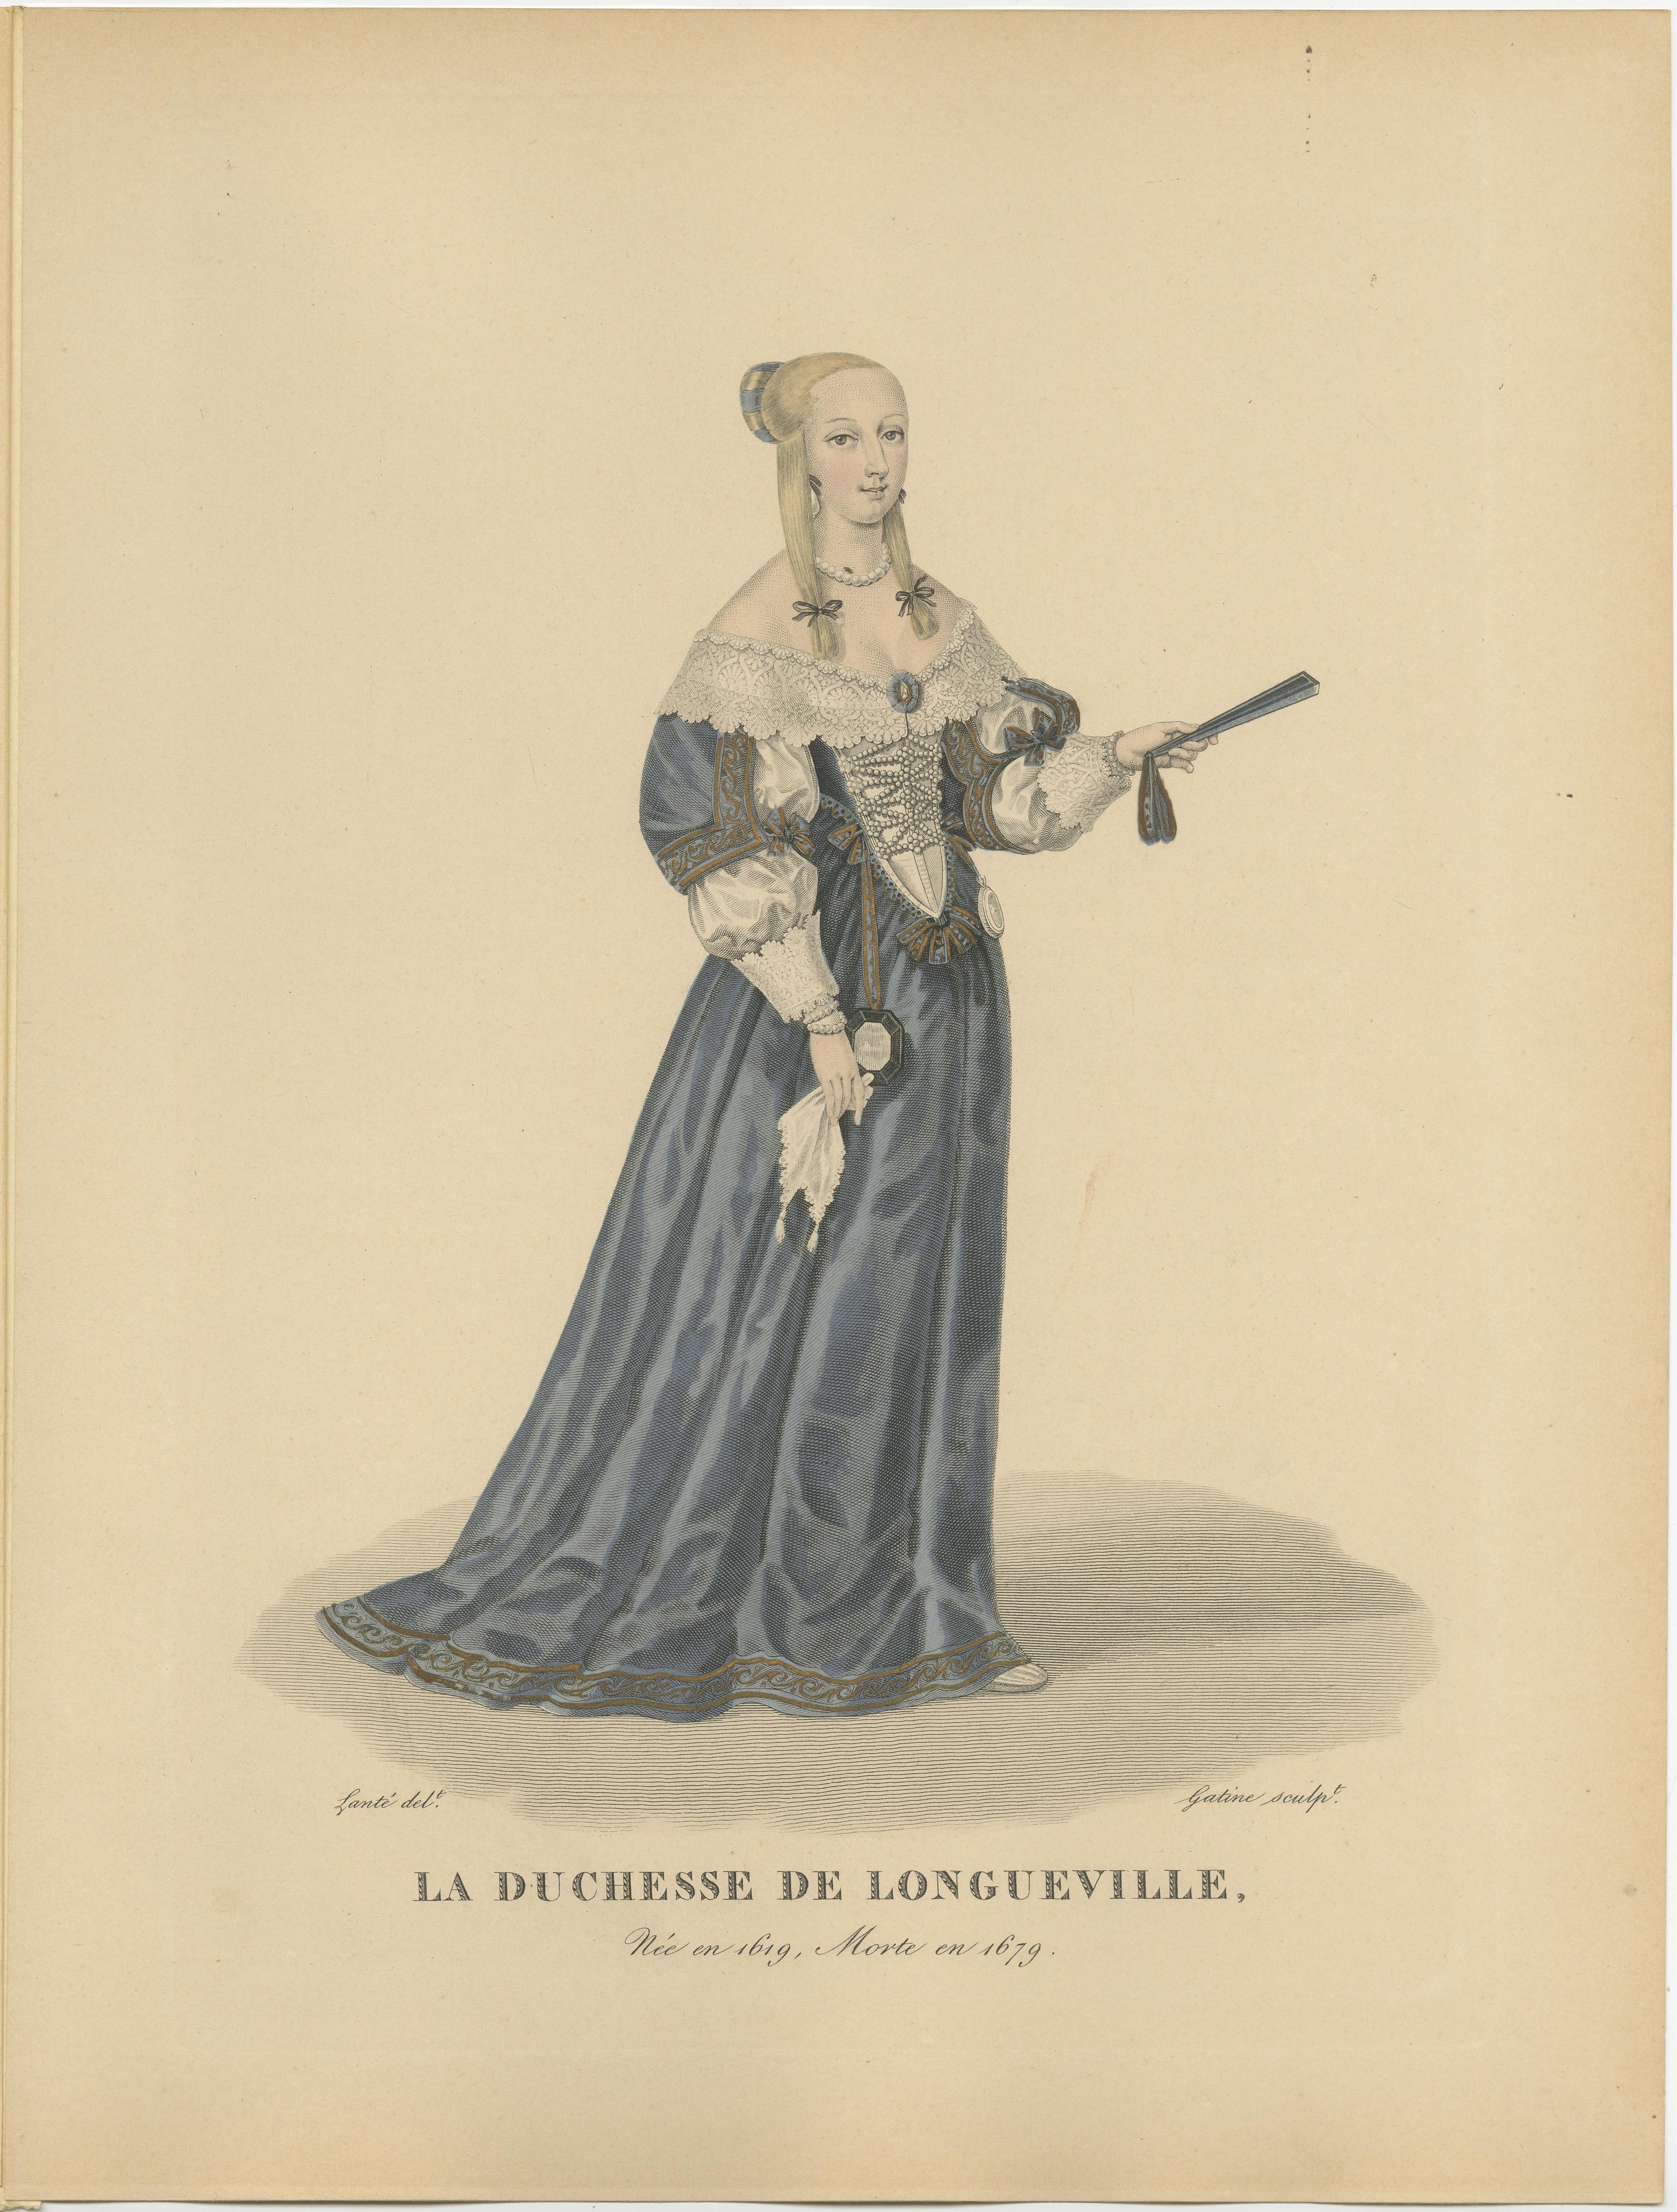 Gravure ancienne intitulée 'LA DUCHESSE DE LONGUEVILLE' Gravure ancienne originale d'Anne-Geneviève de Bourbon, Duchesse de Longueville.

Anne-Geneviève de Bourbon (28 août 1619 - 5 avril 1679) était une princesse française dont on se souvient